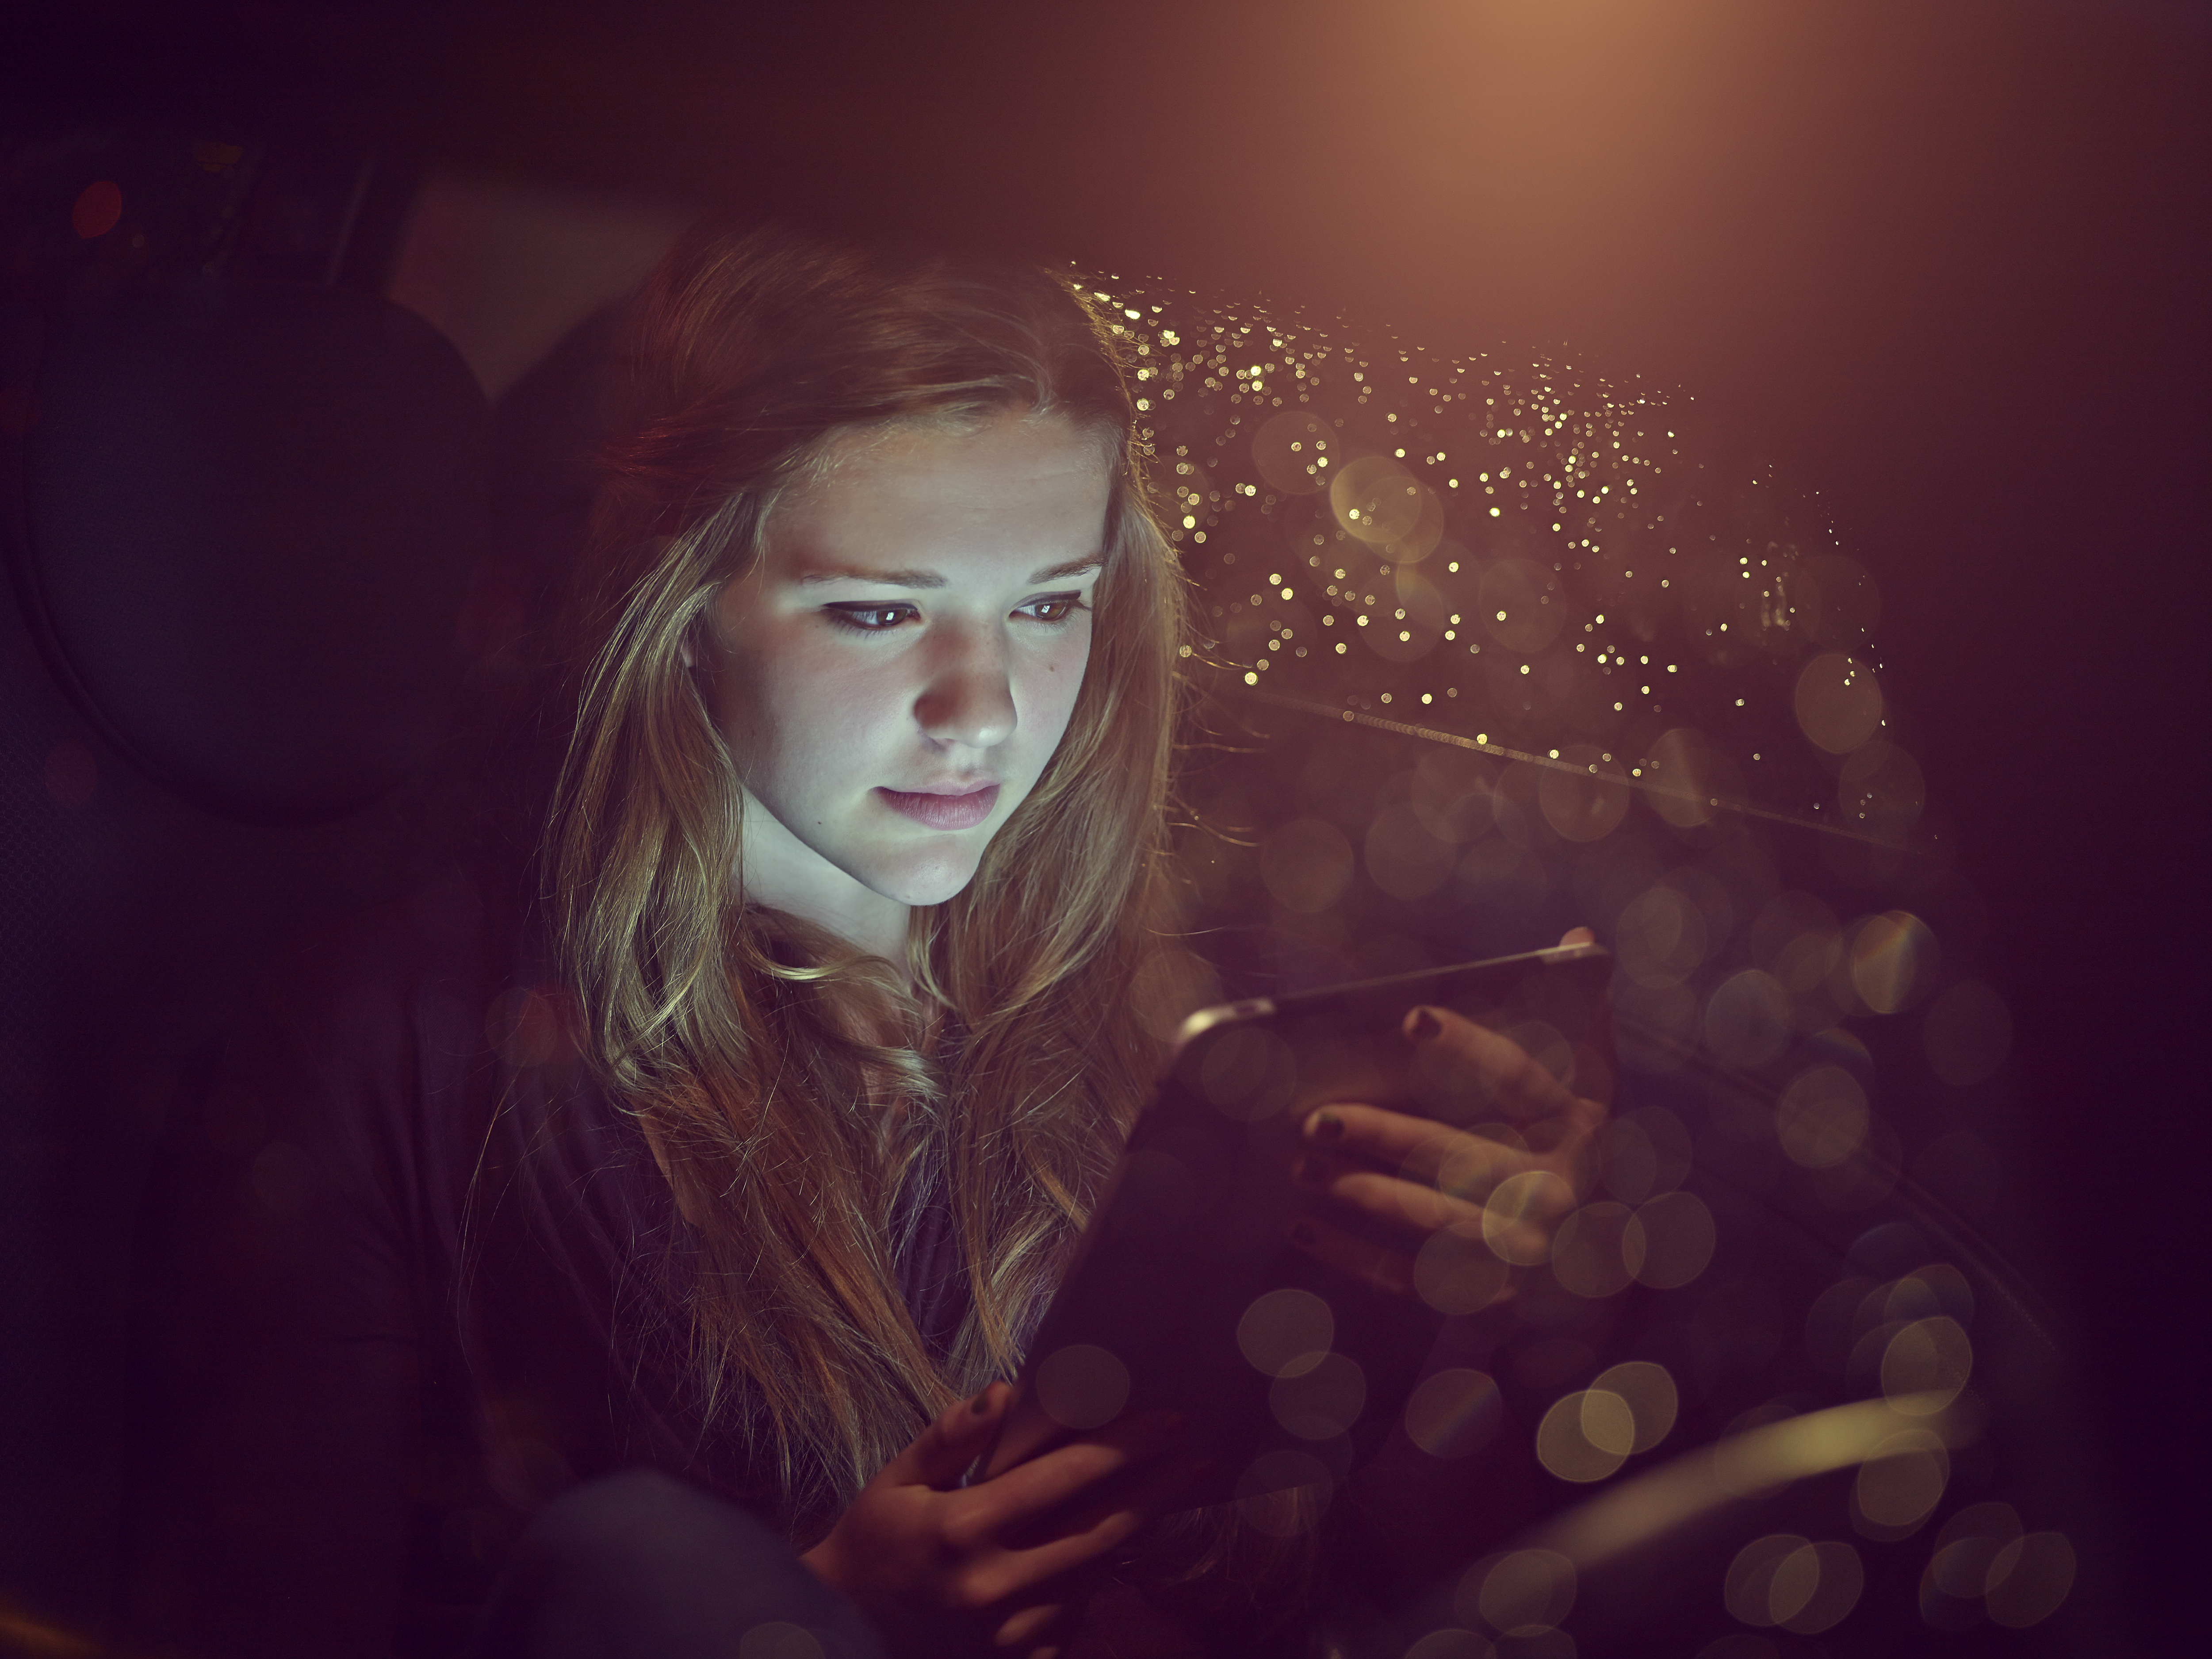 Adolescente sur une tablette électronique dans une voiture la nuit | Source : Getty Images